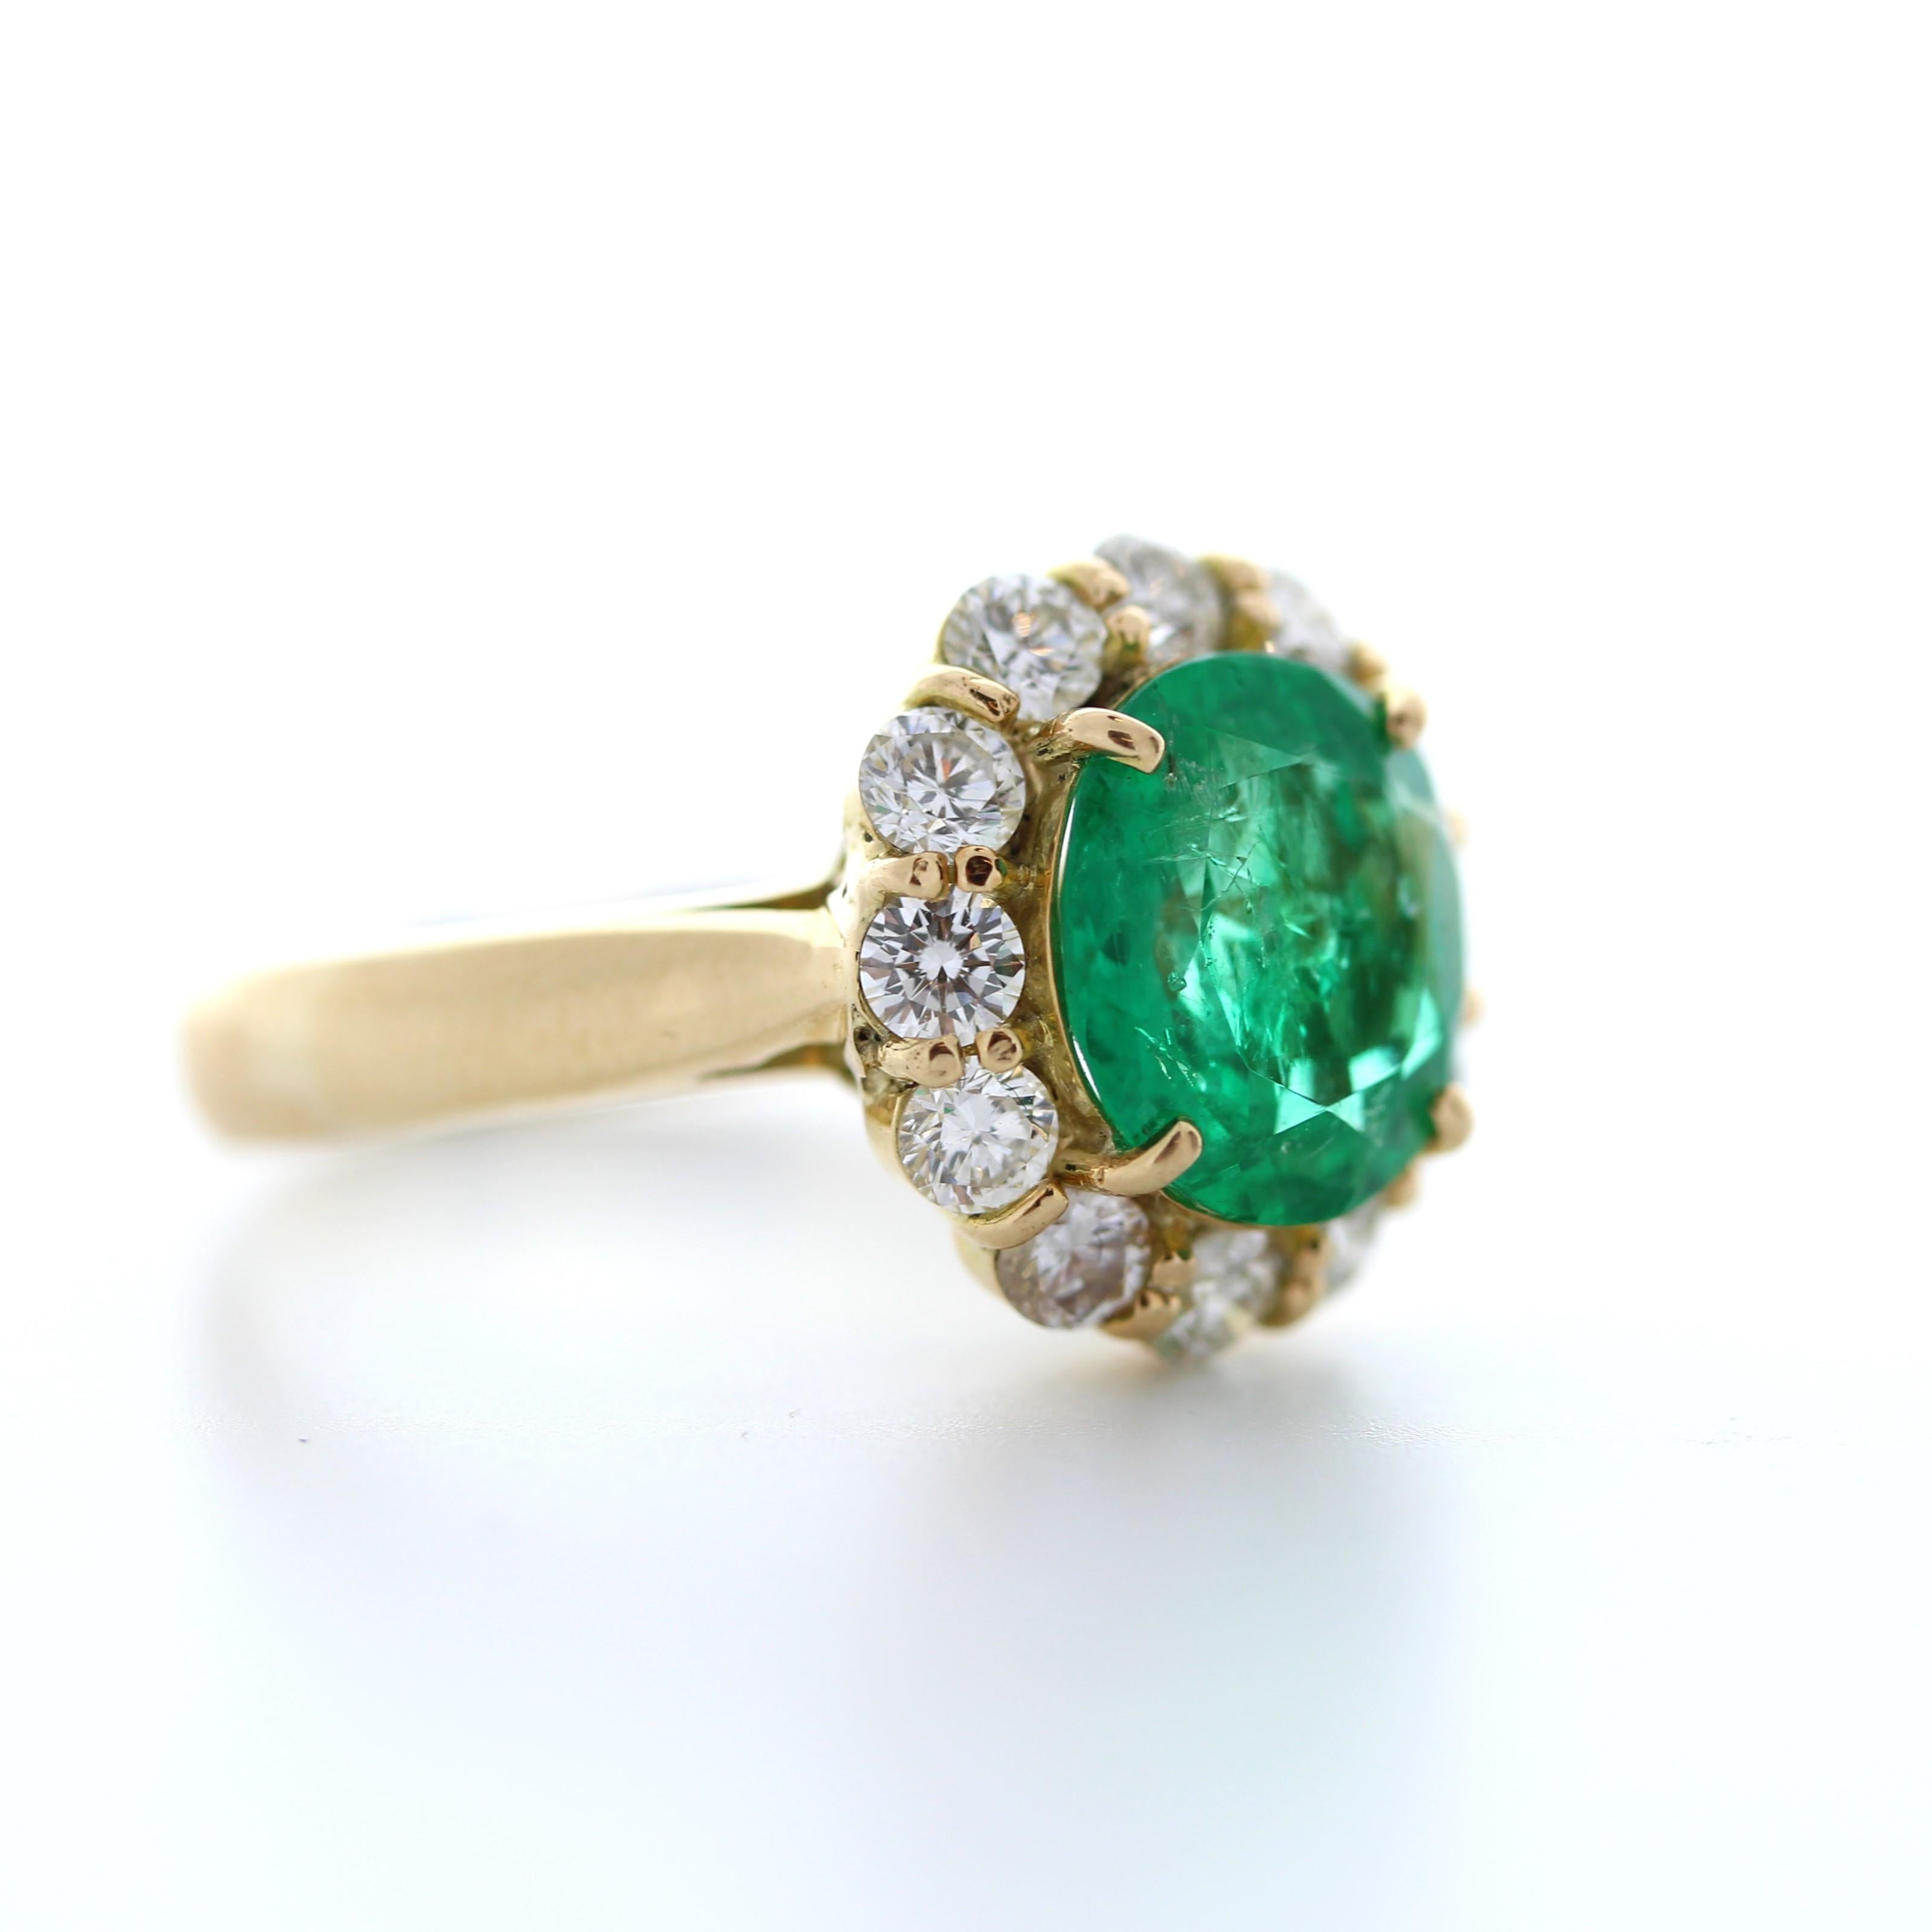 Dieser majestätische und elegante Edelsteinring ist von Anfang bis Ende spektakulär. Er ist mit einem sattgrünen Smaragd von 3,00 Karat besetzt. Die Größe dieses grünen Saphirs ist der Clou des Rings. Eine schillernde Reihe von 12 runden Brillanten